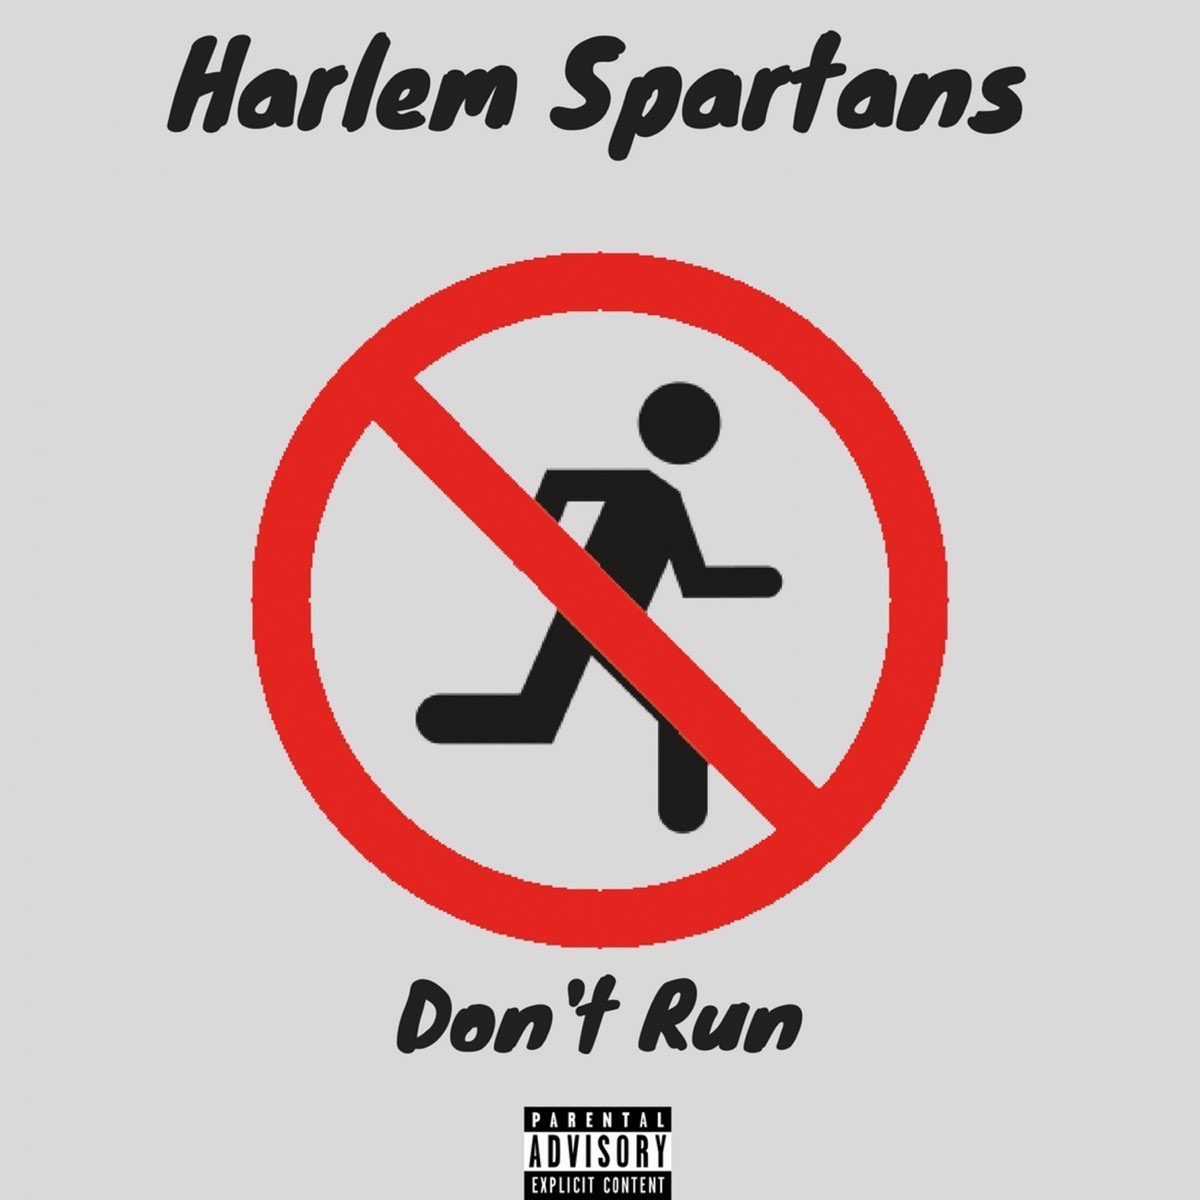 Don't Run. Harlem Spartans. Ran didn't Run. Don't Run here. Dont running